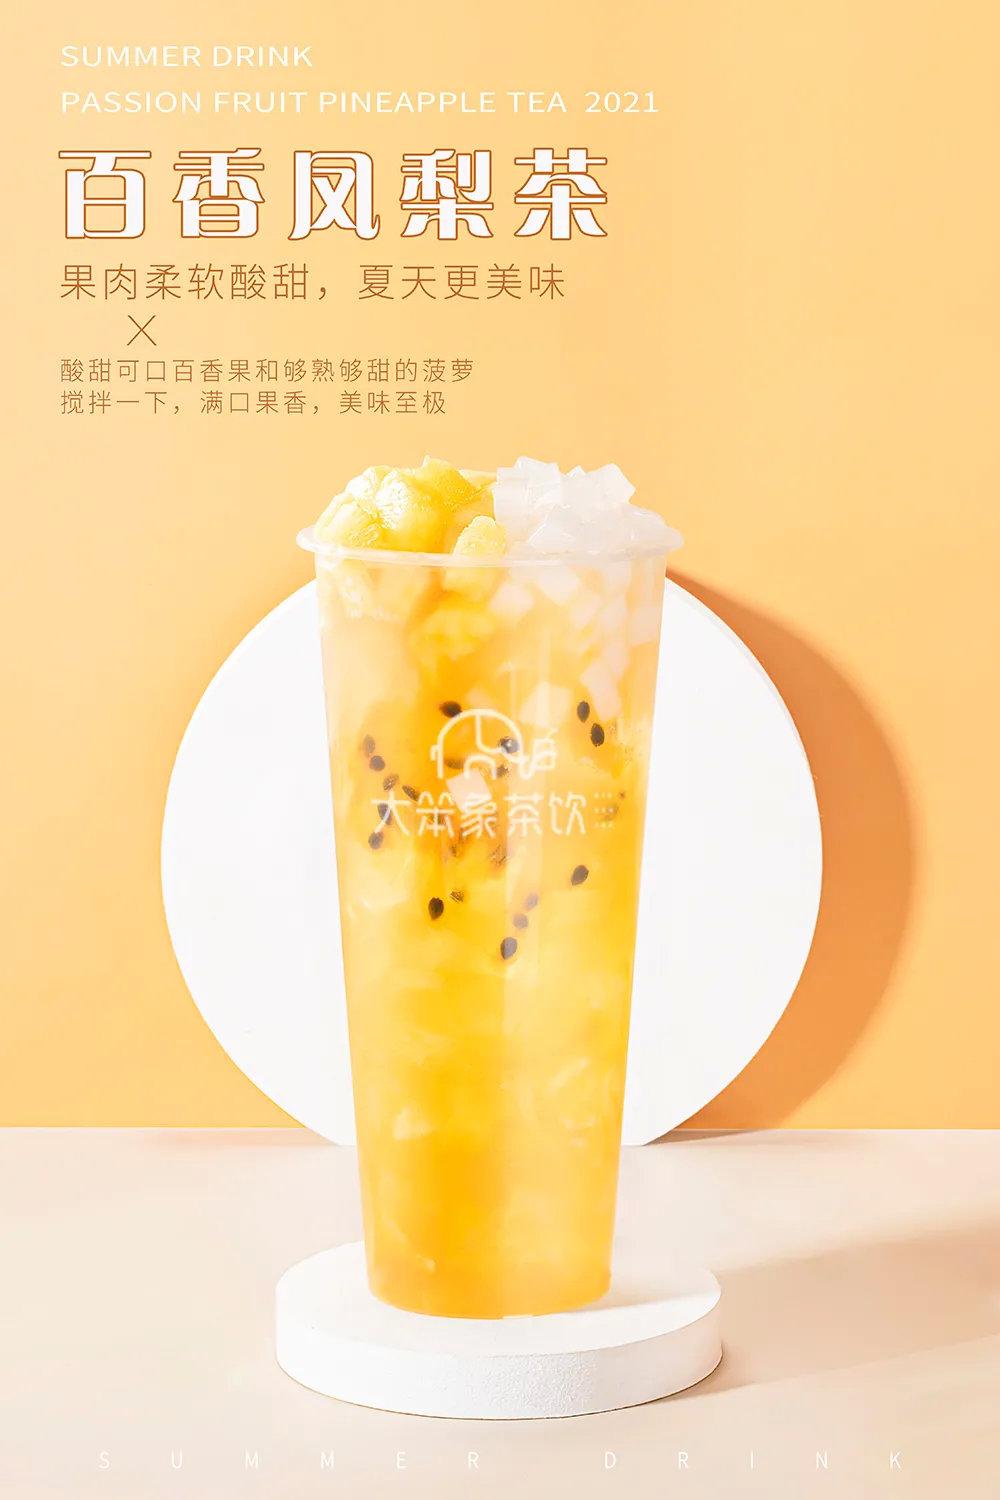 菠萝冰条感动几亿人凤梨正当季又能做出什么新花样